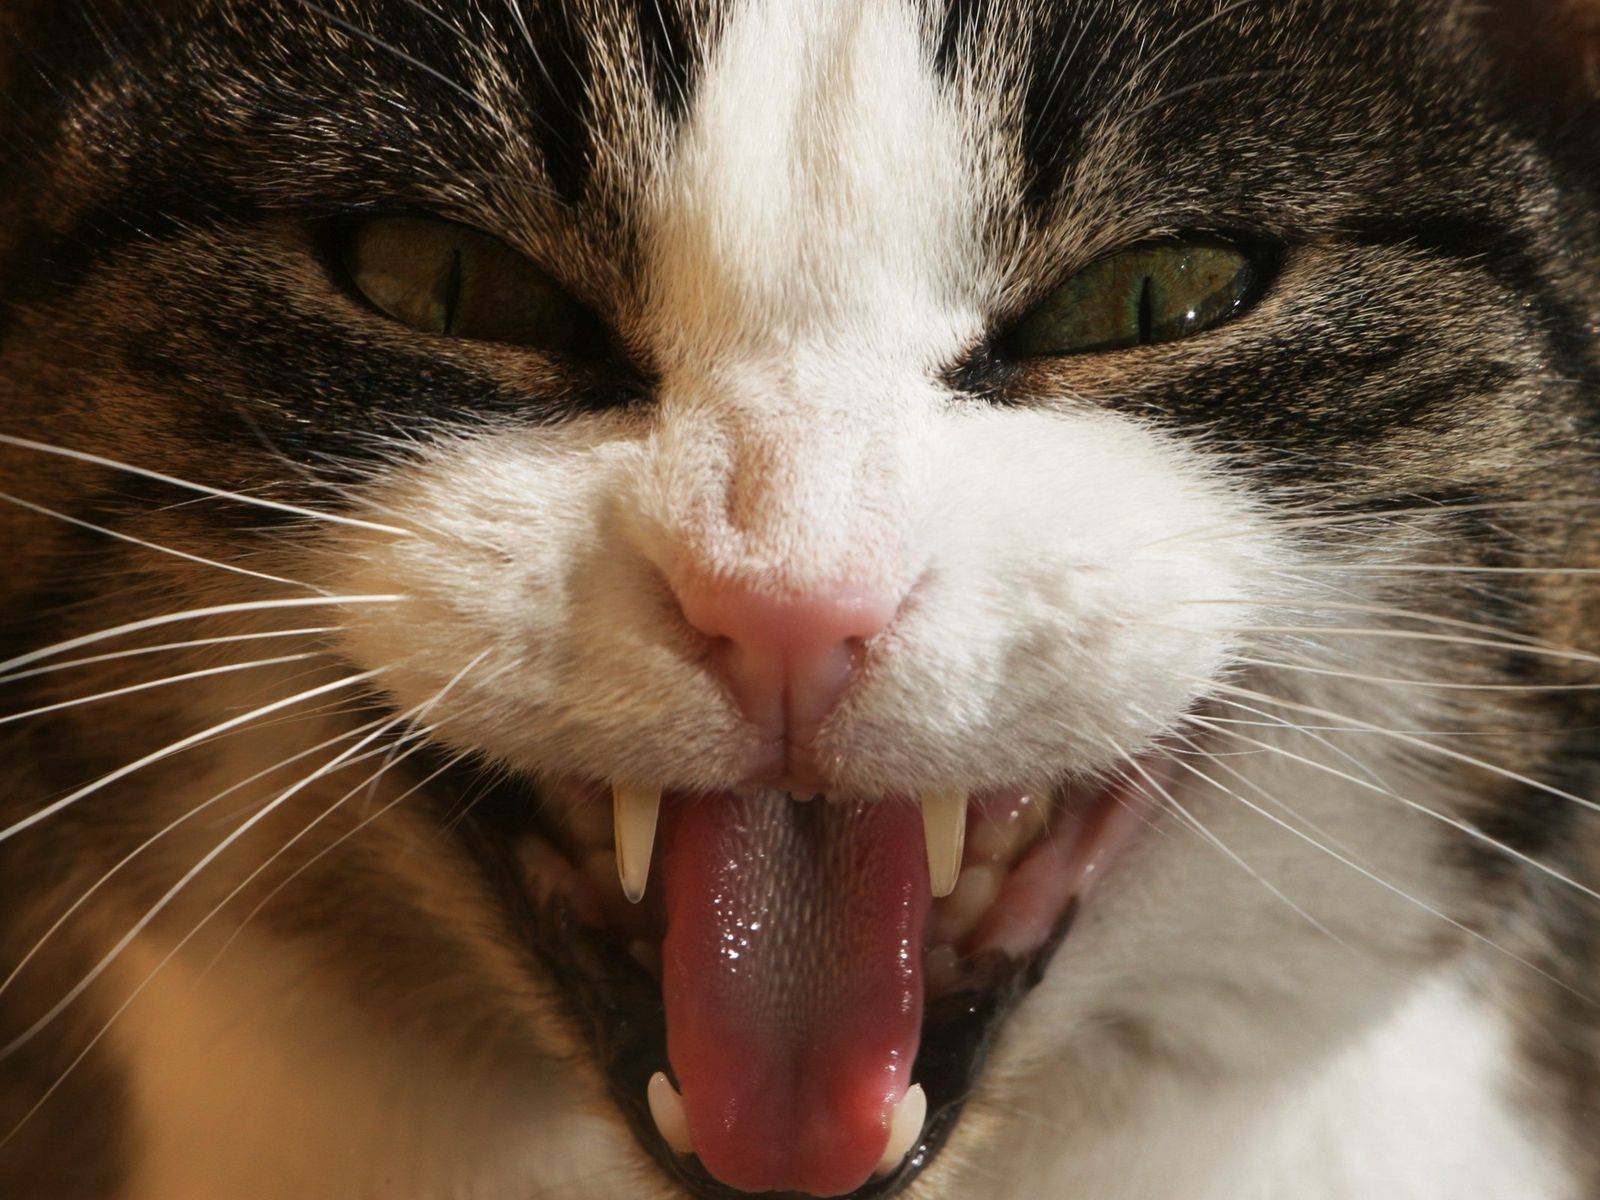 Пена изо рта у кошки: причины, первая помощь